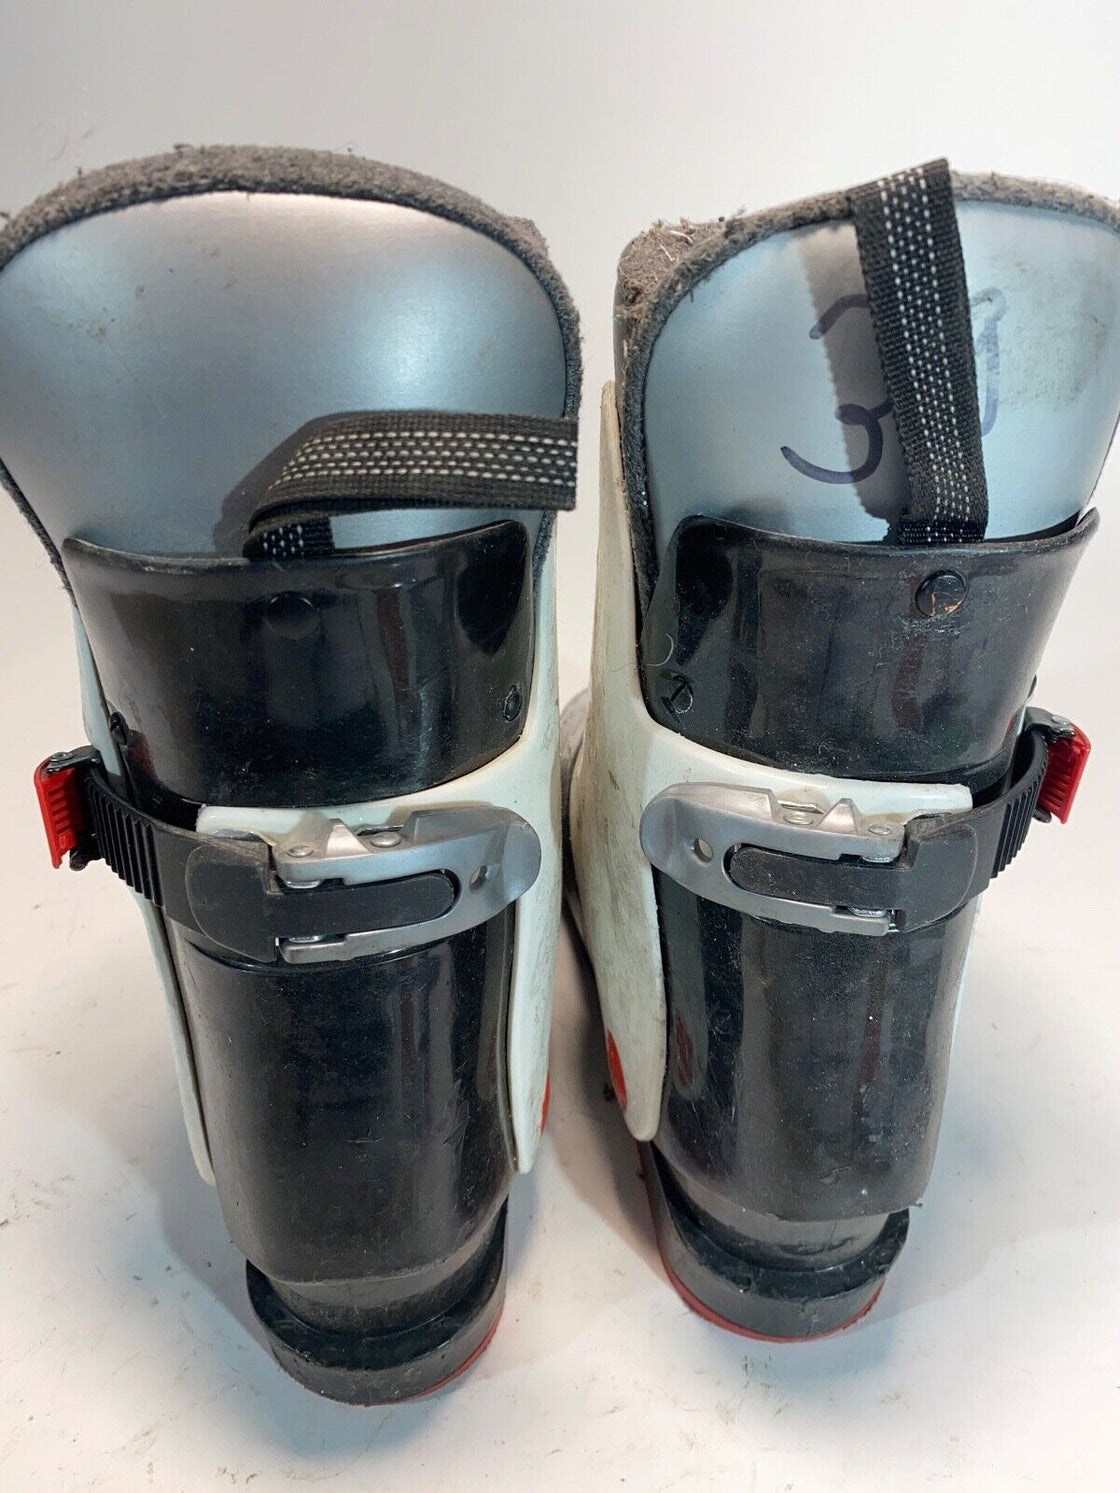 TECNO Alpine Ski Boots Downhill Boots Size EU39 Mondo 240 mm, Outer Sole 289 mm